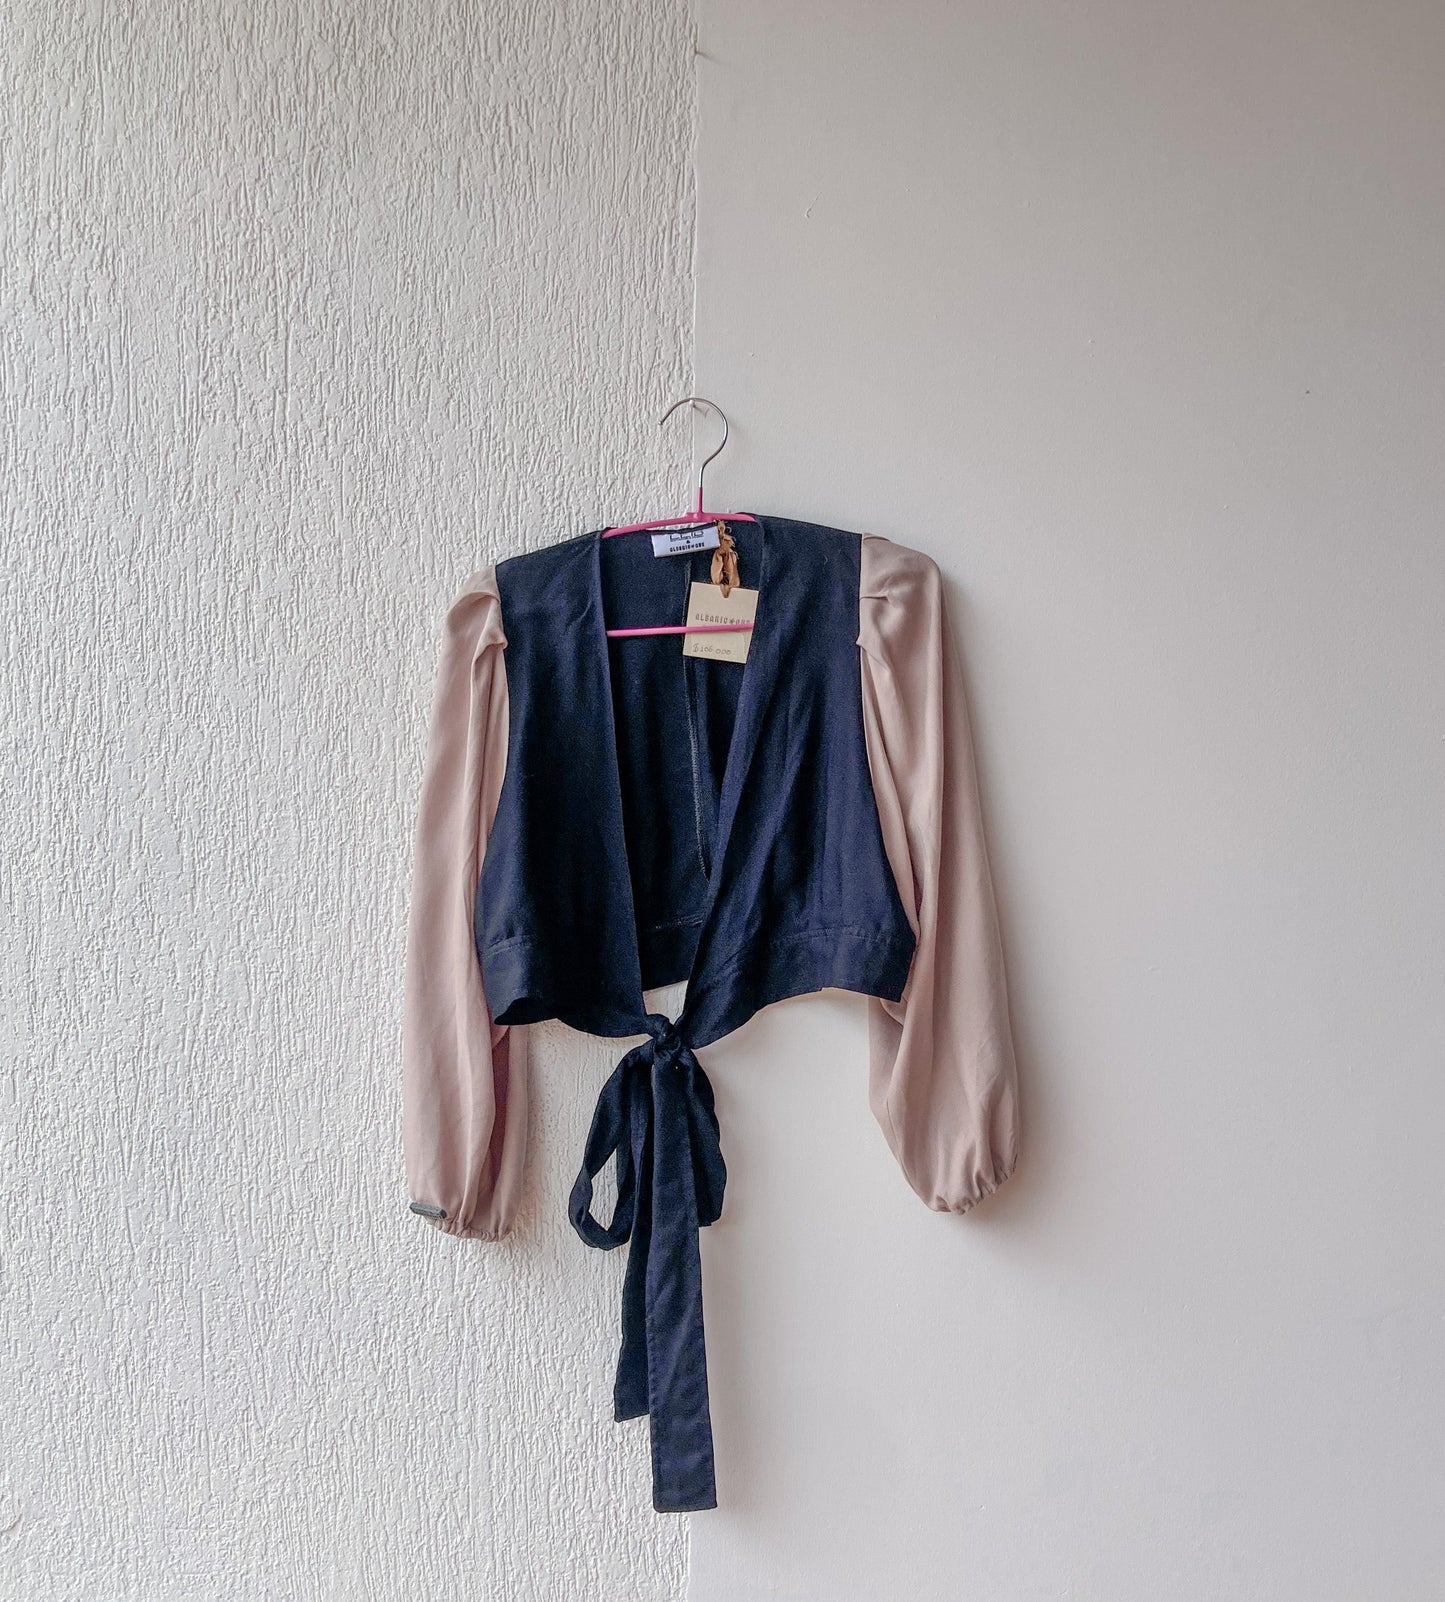 Una blusa versátil y moderna que puedes combinar con diferentes prendas. Tiene un escote profundo que realza tu figura y un fajón que te permite ajustarla a tu gusto. Es un crop top de tela suave y cómoda que puedes usar en cualquier ocasión.